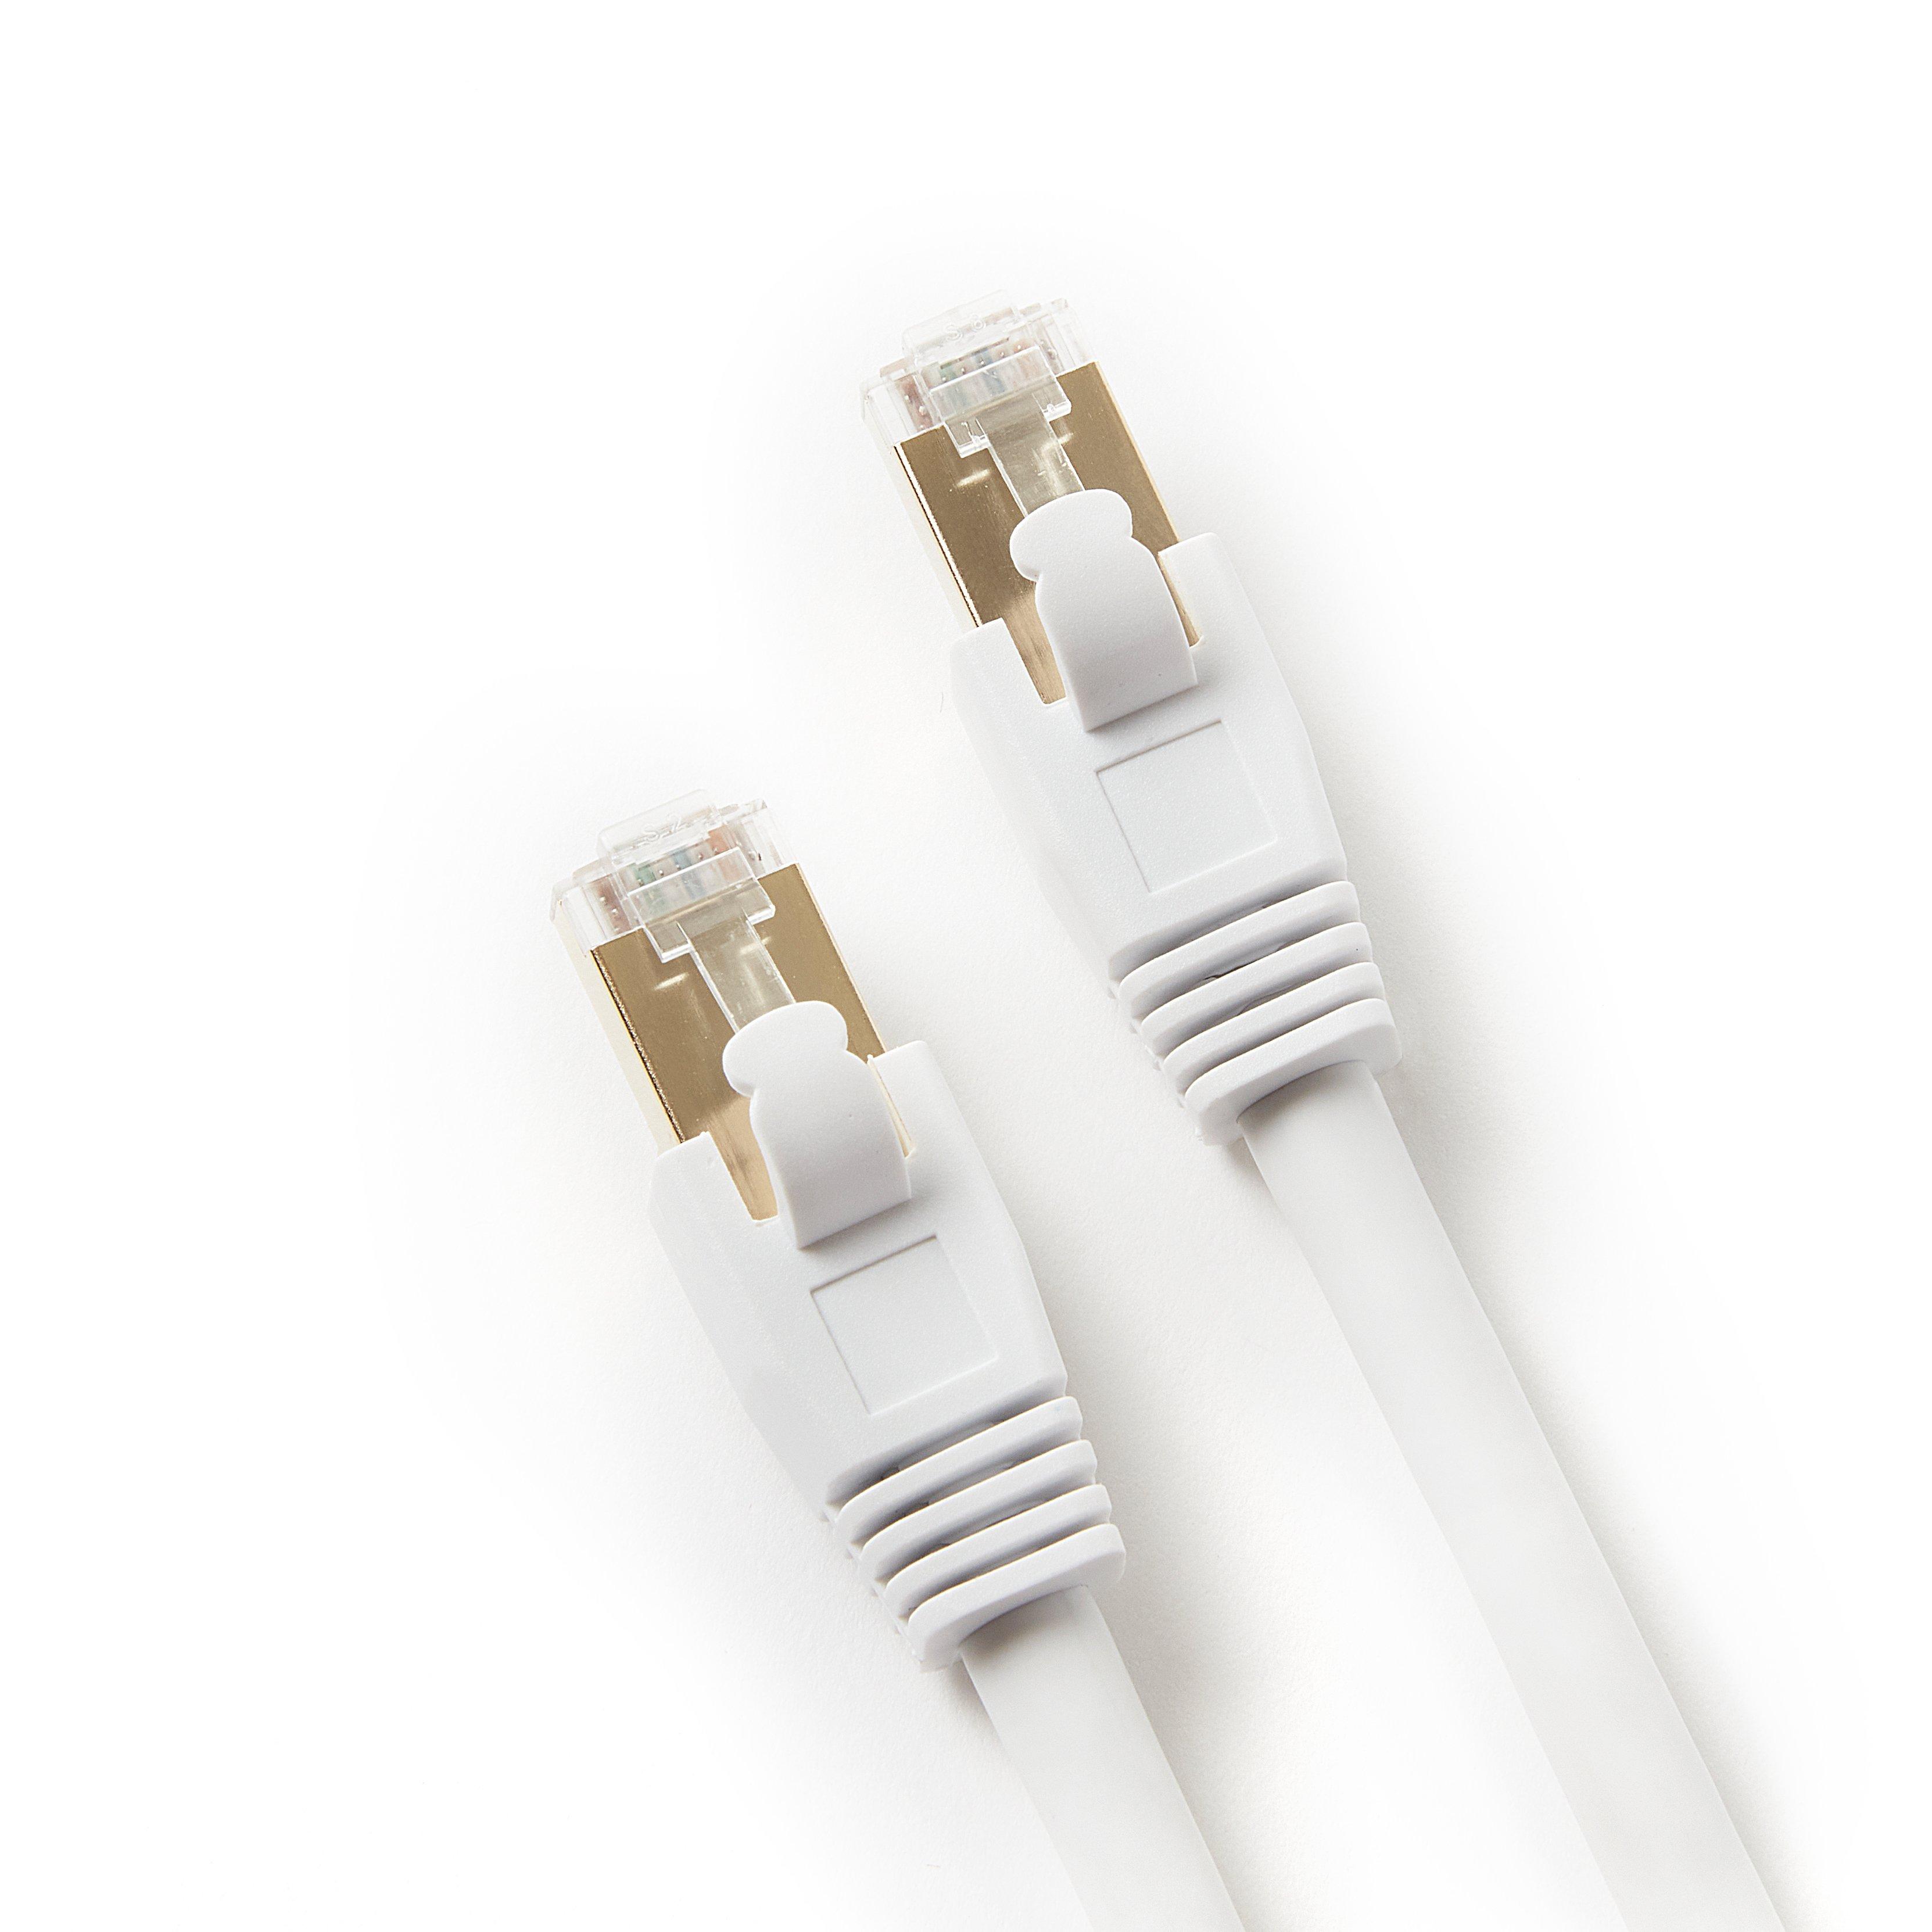 Atrix CAT 7 Ethernet Cable PVC 5ft White GameStop Exclusive